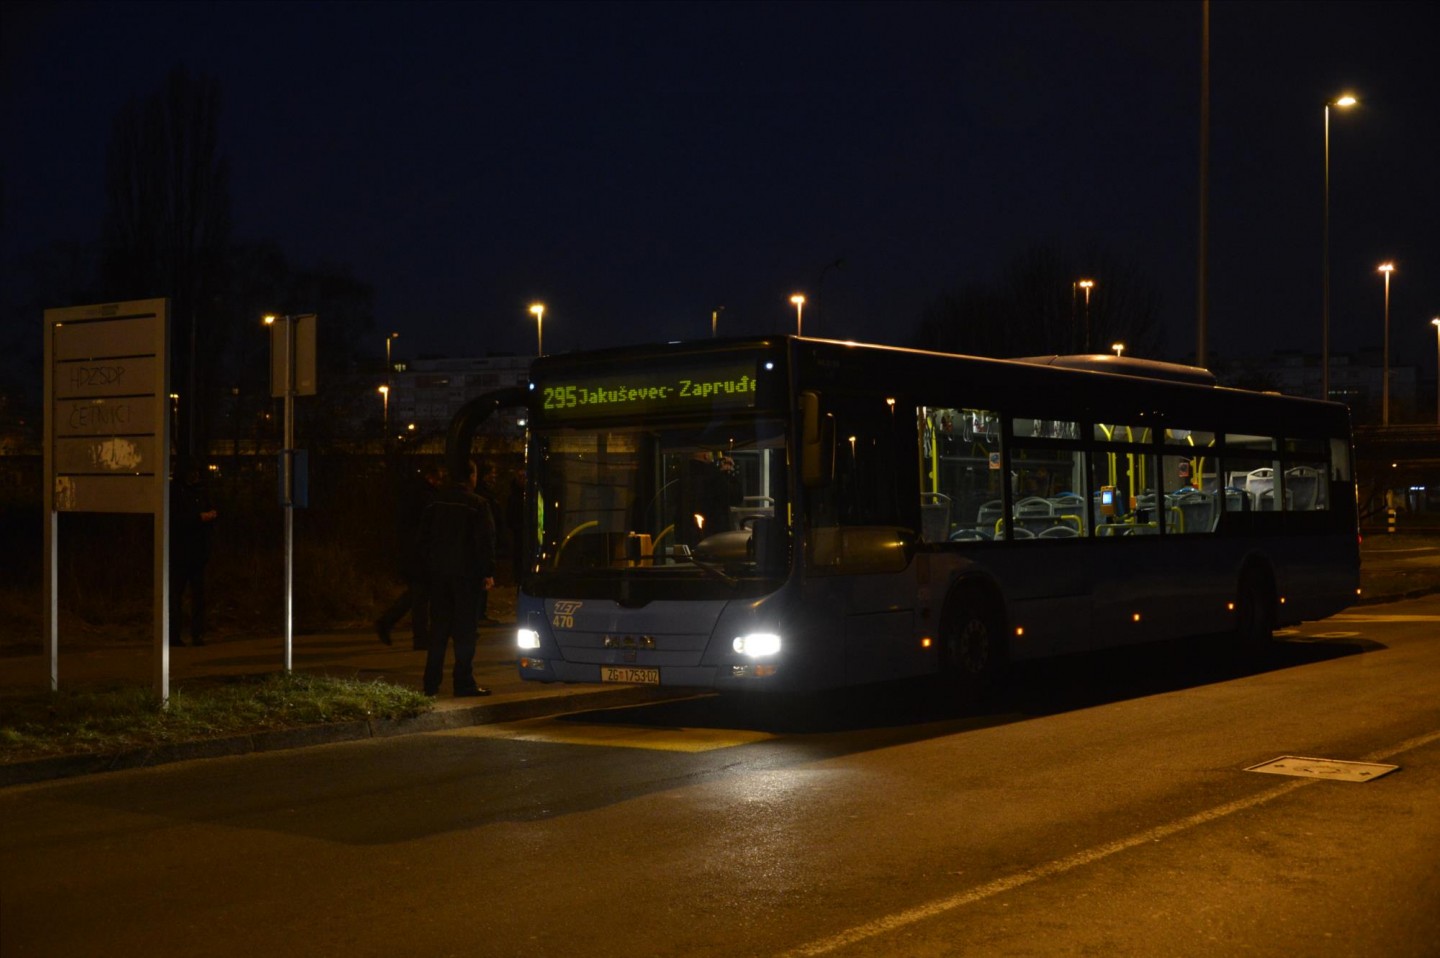 Puštena autobusna linija 295 Zapruđe – Jakuševac – Zapruđe